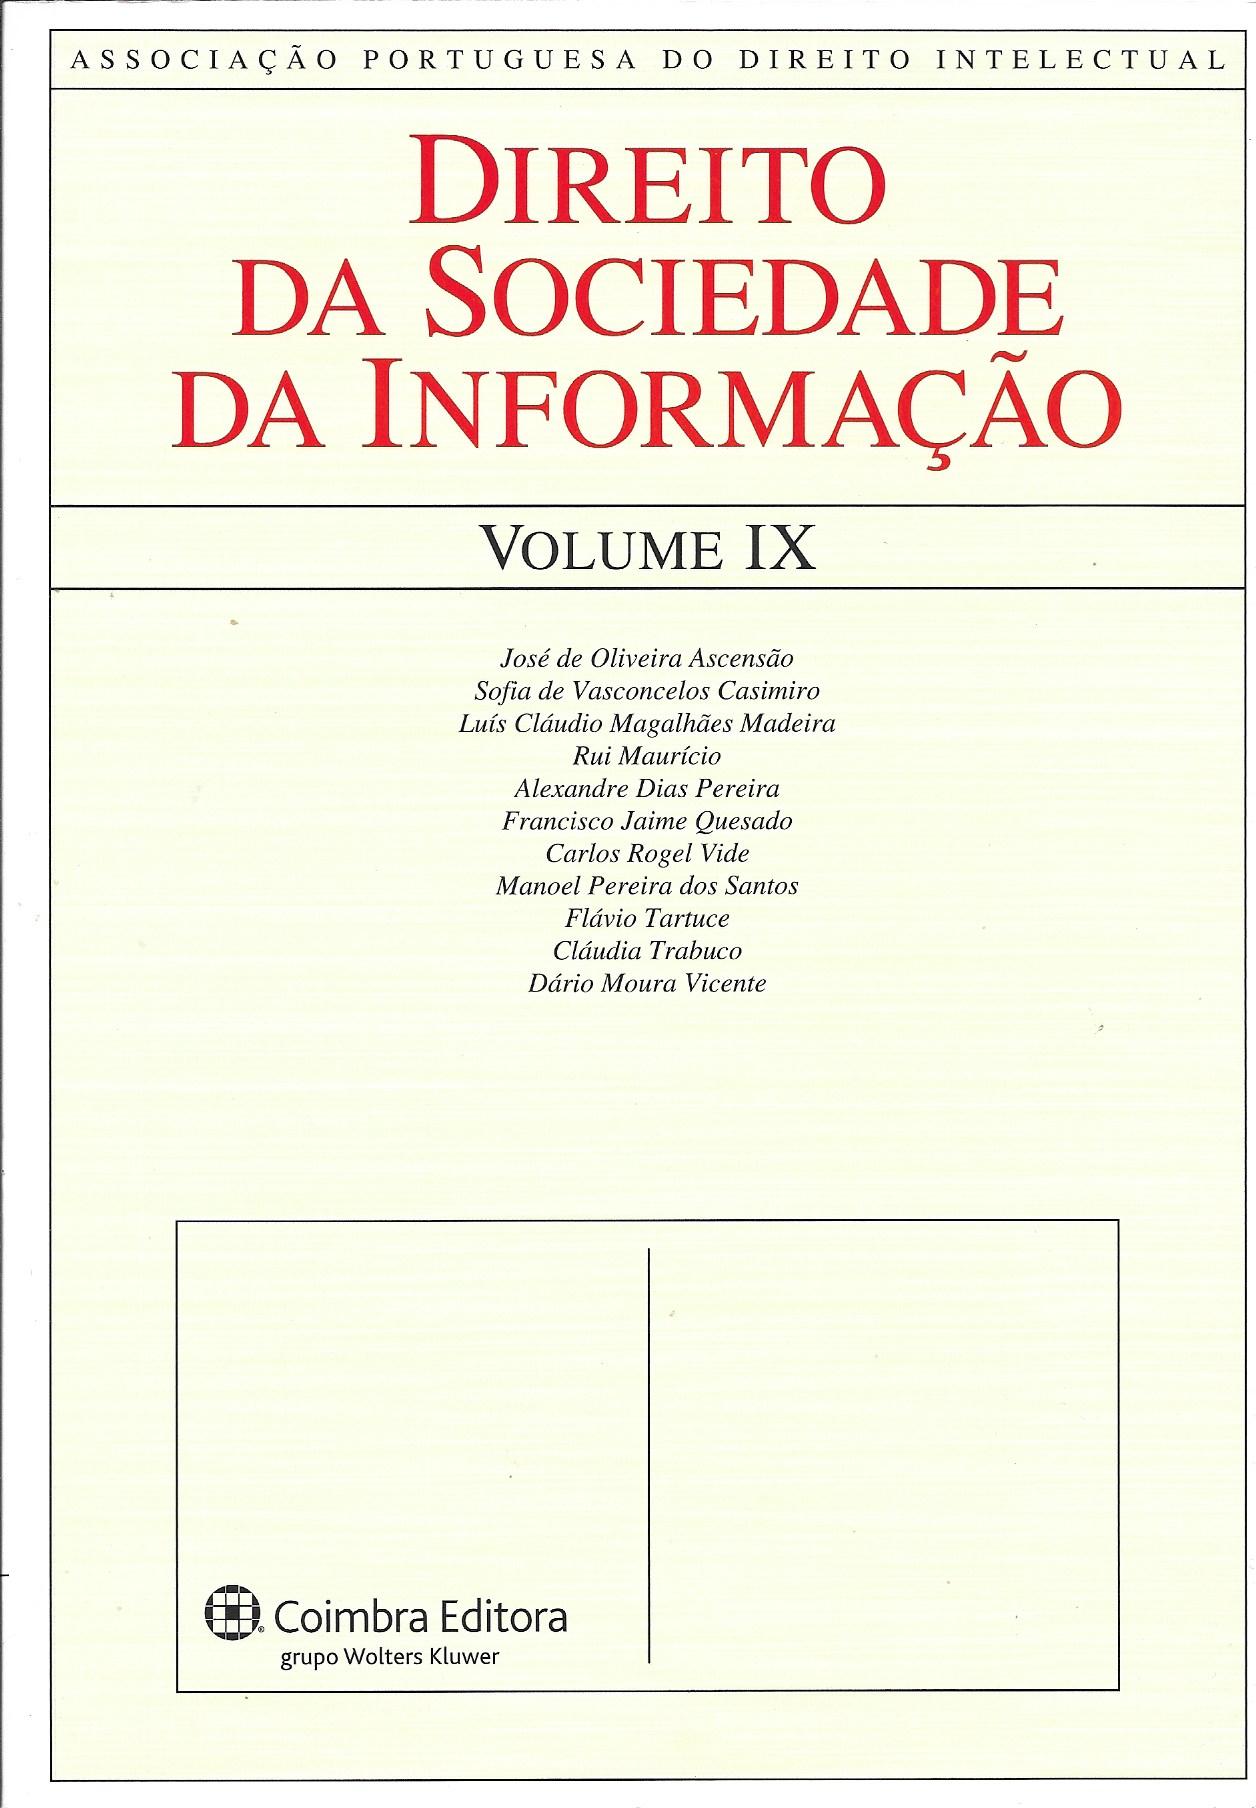 Direito da Sociedade da Informação - VOLUME IX